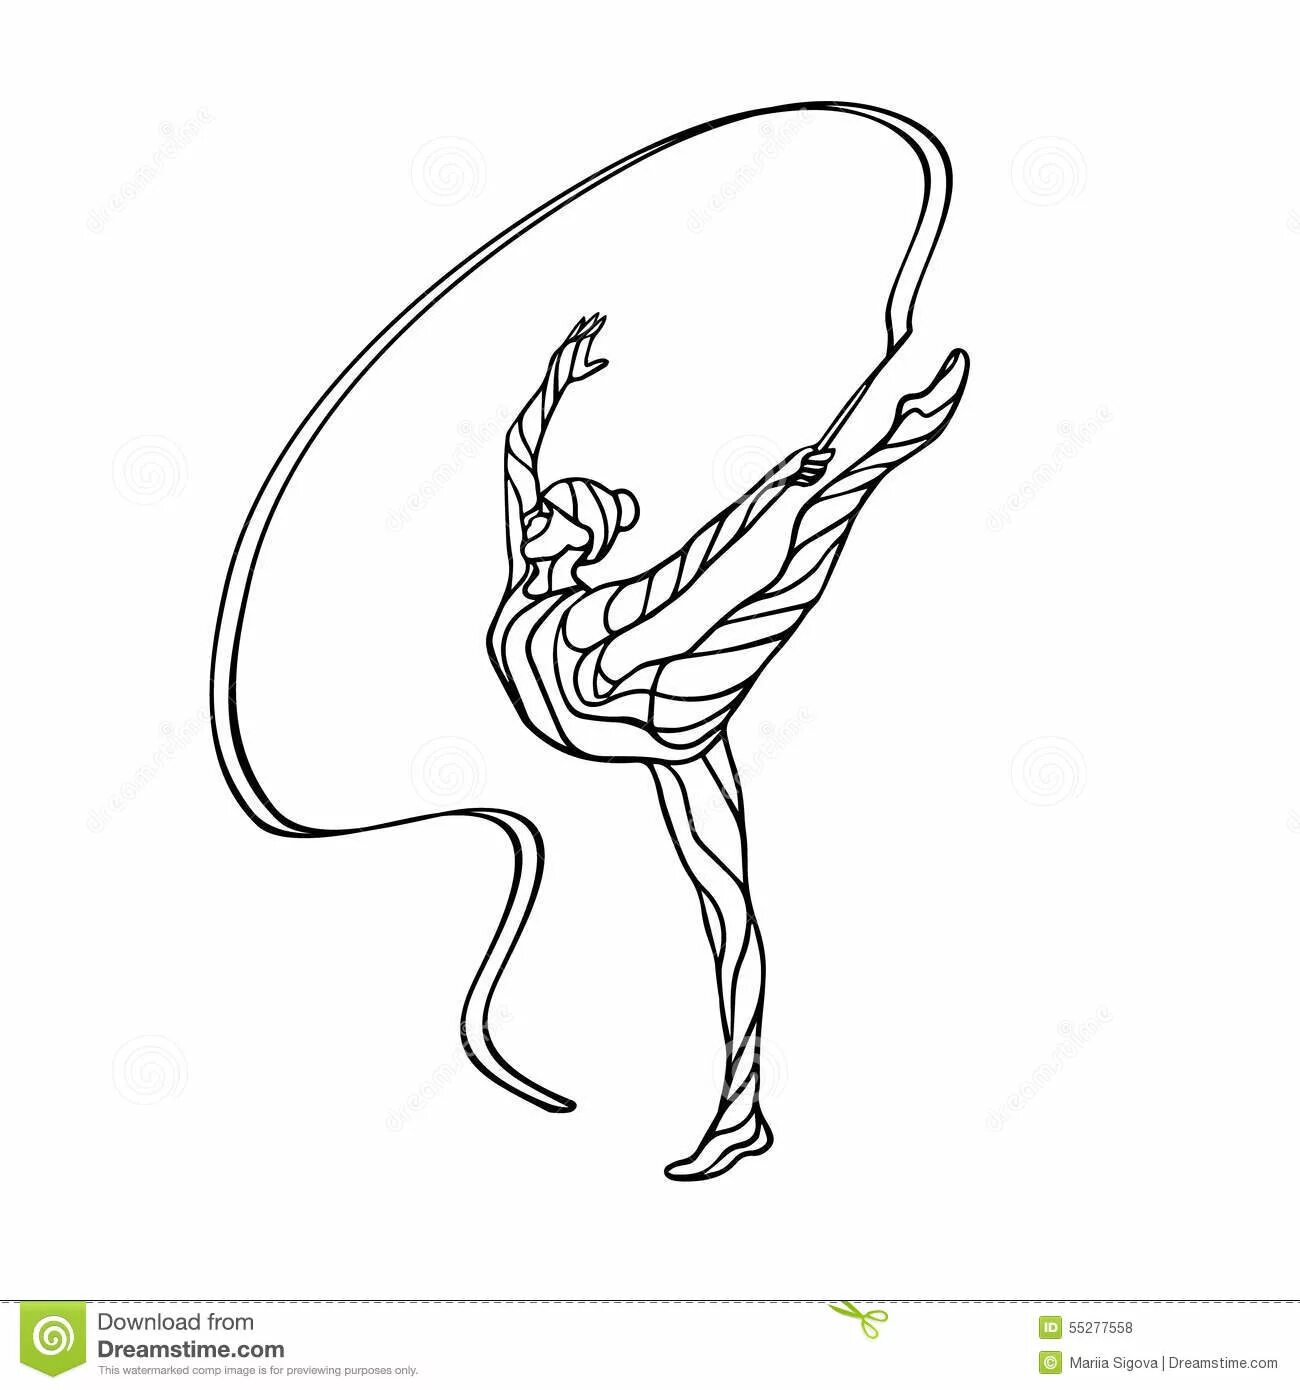 Великолепная гимнастка с лентой